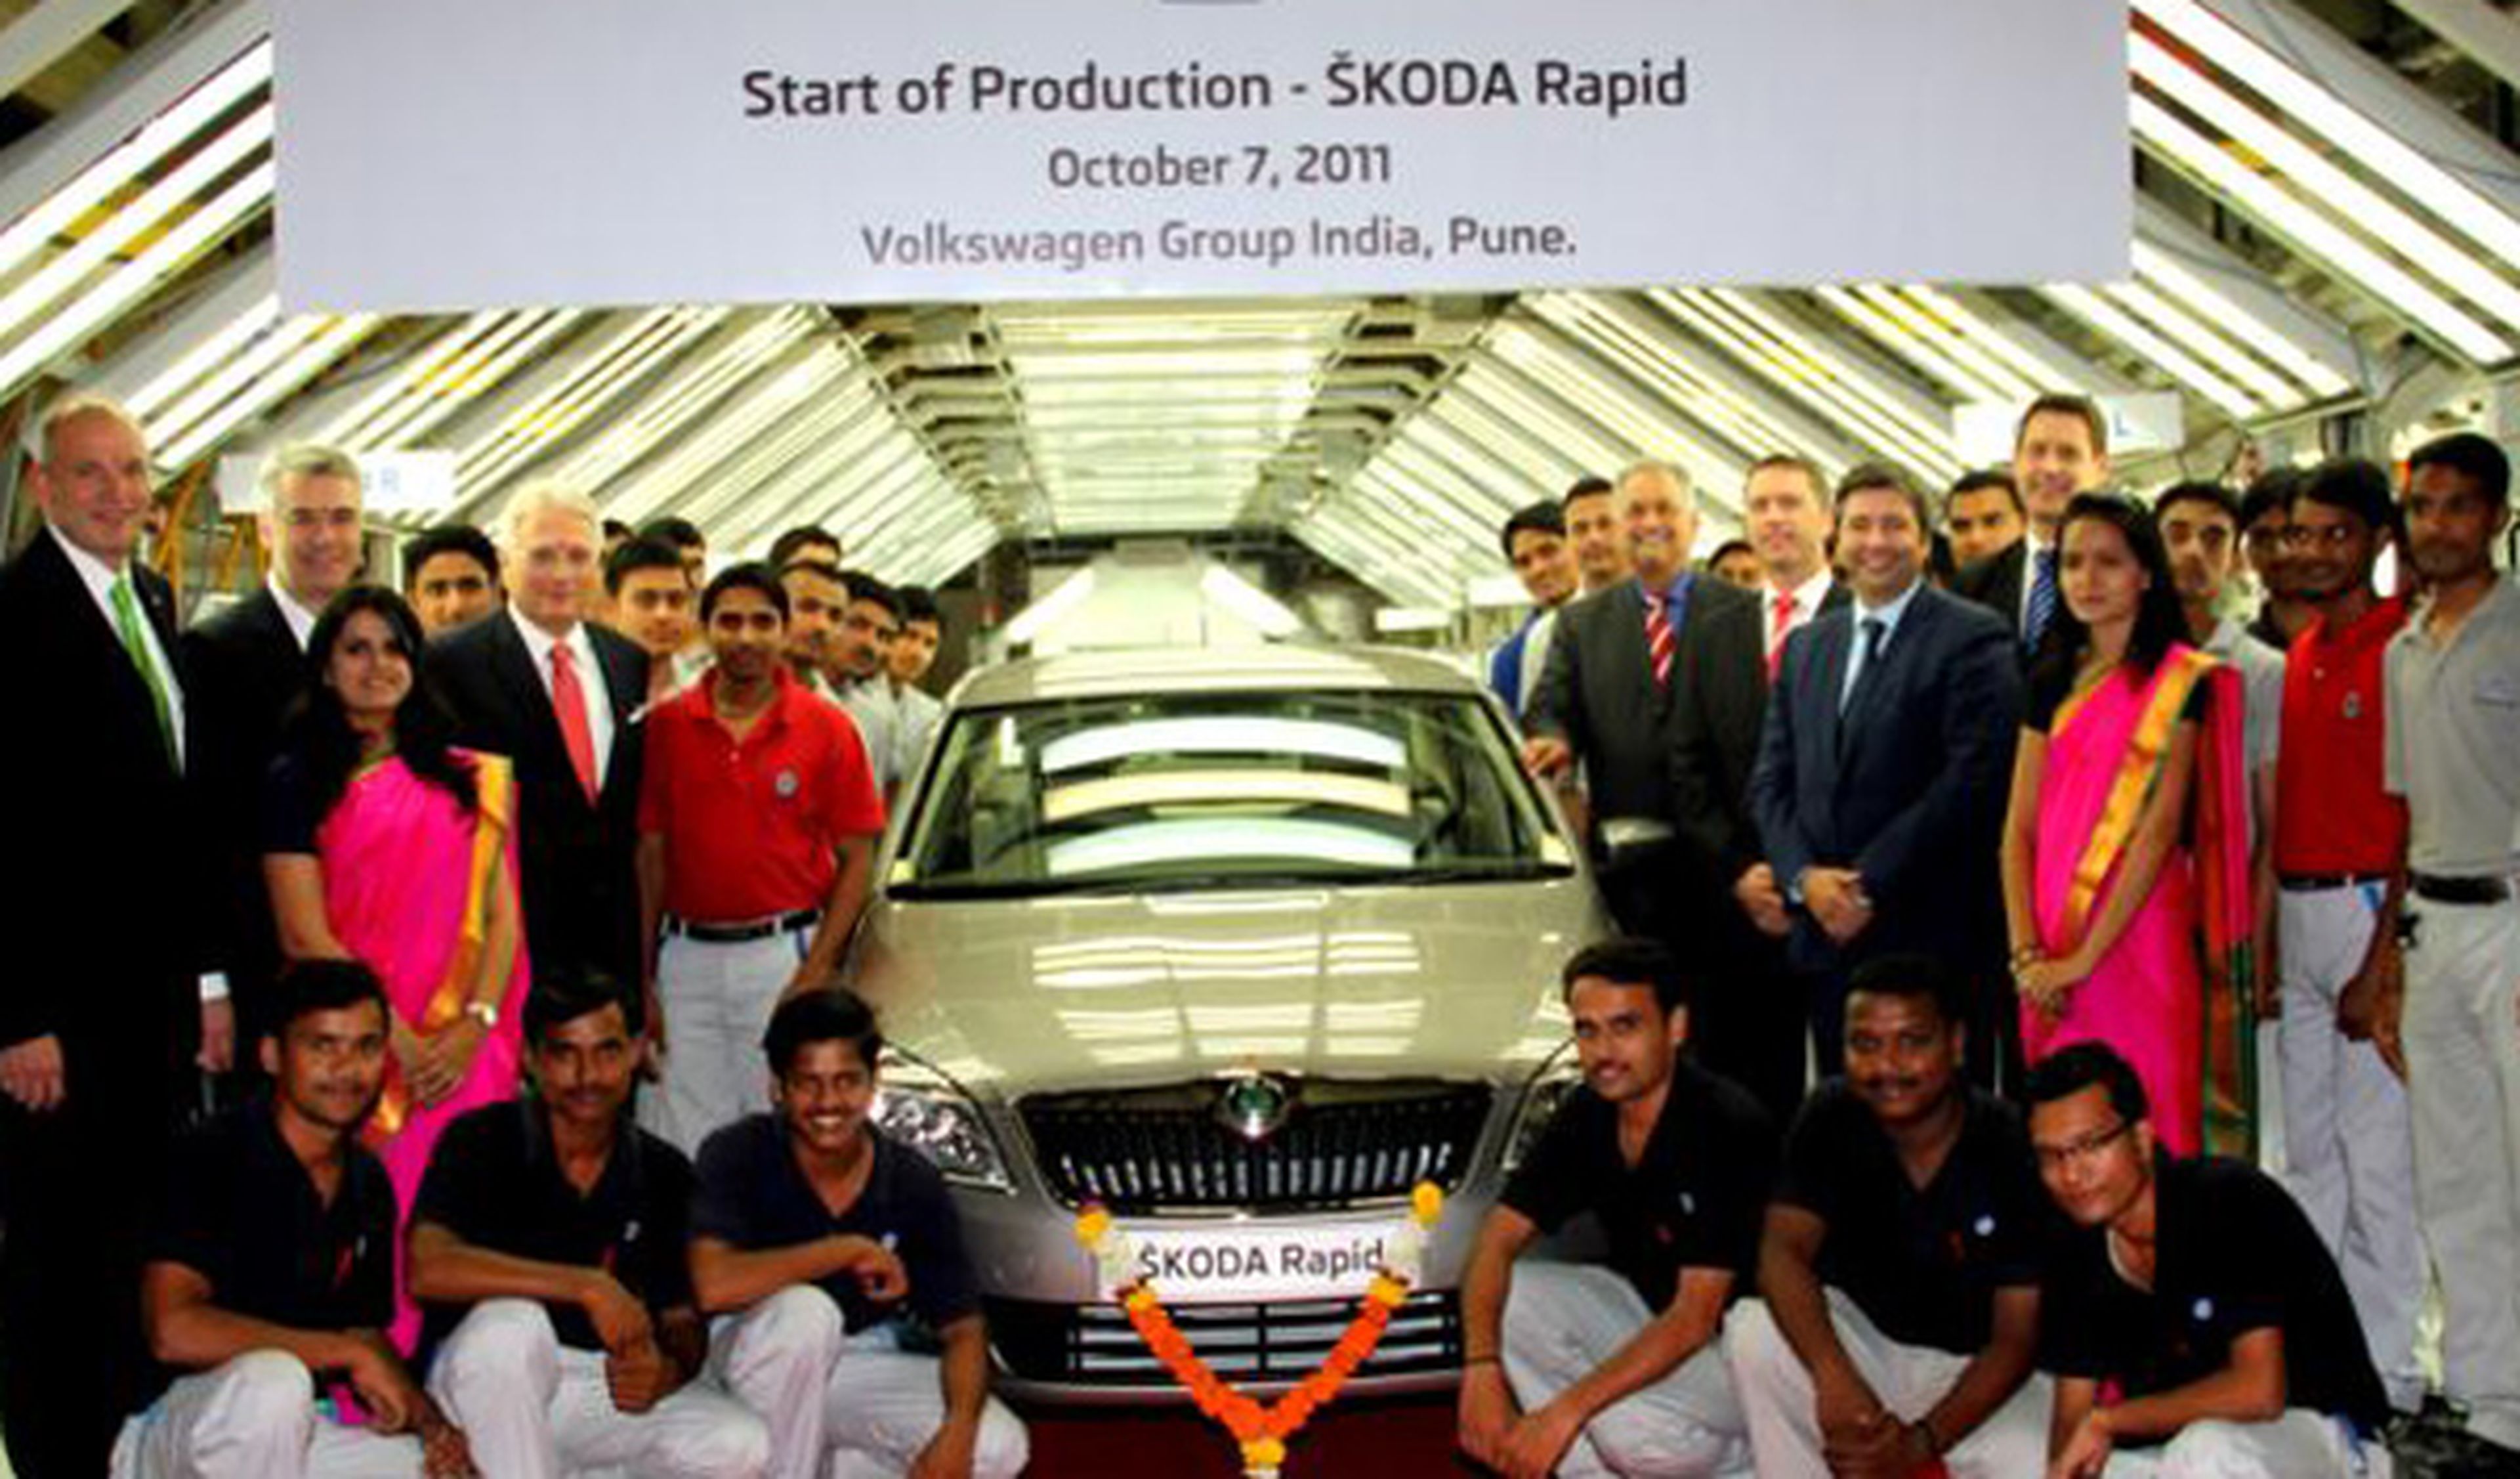 El Skoda Rapid inicia su producción en la India